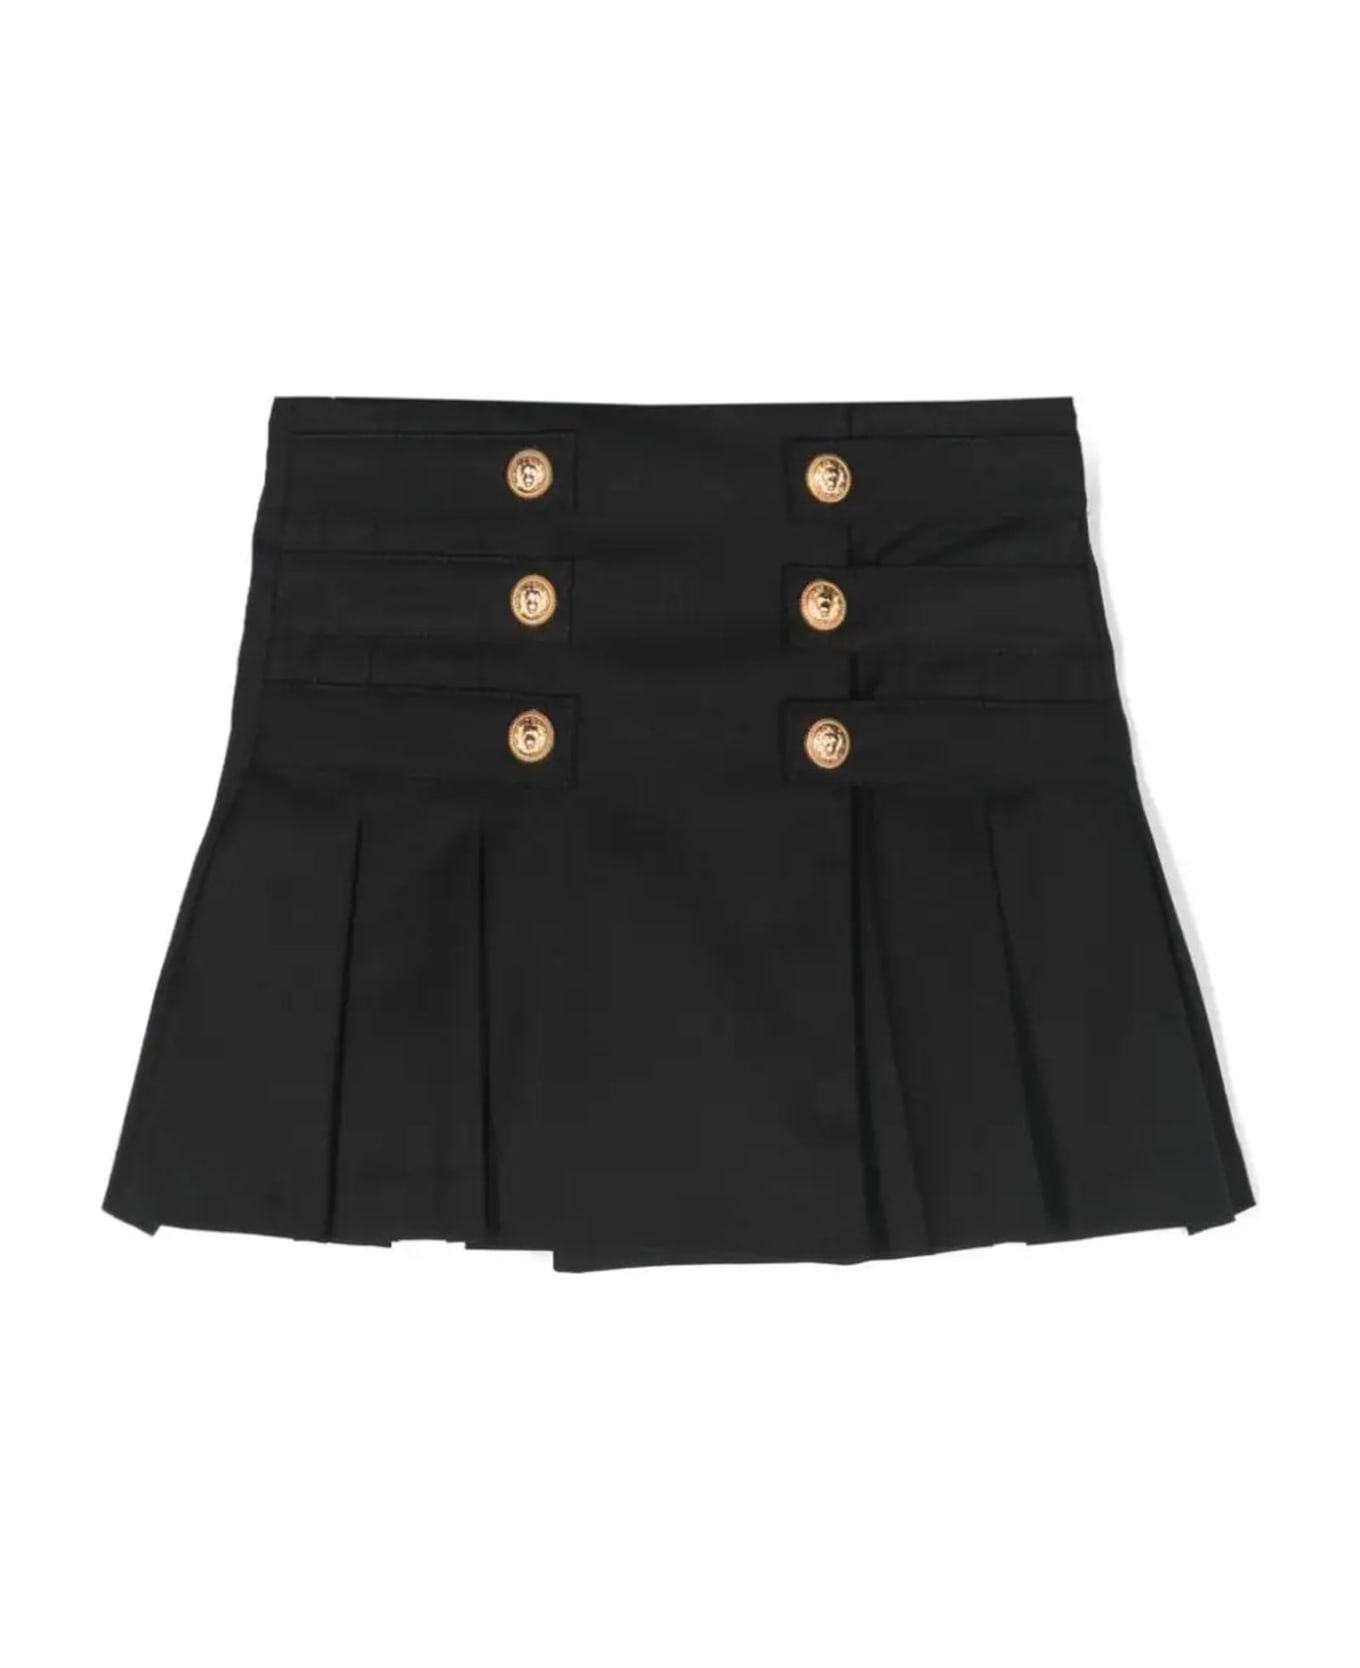 Balmain Skirts Black - Black ボトムス